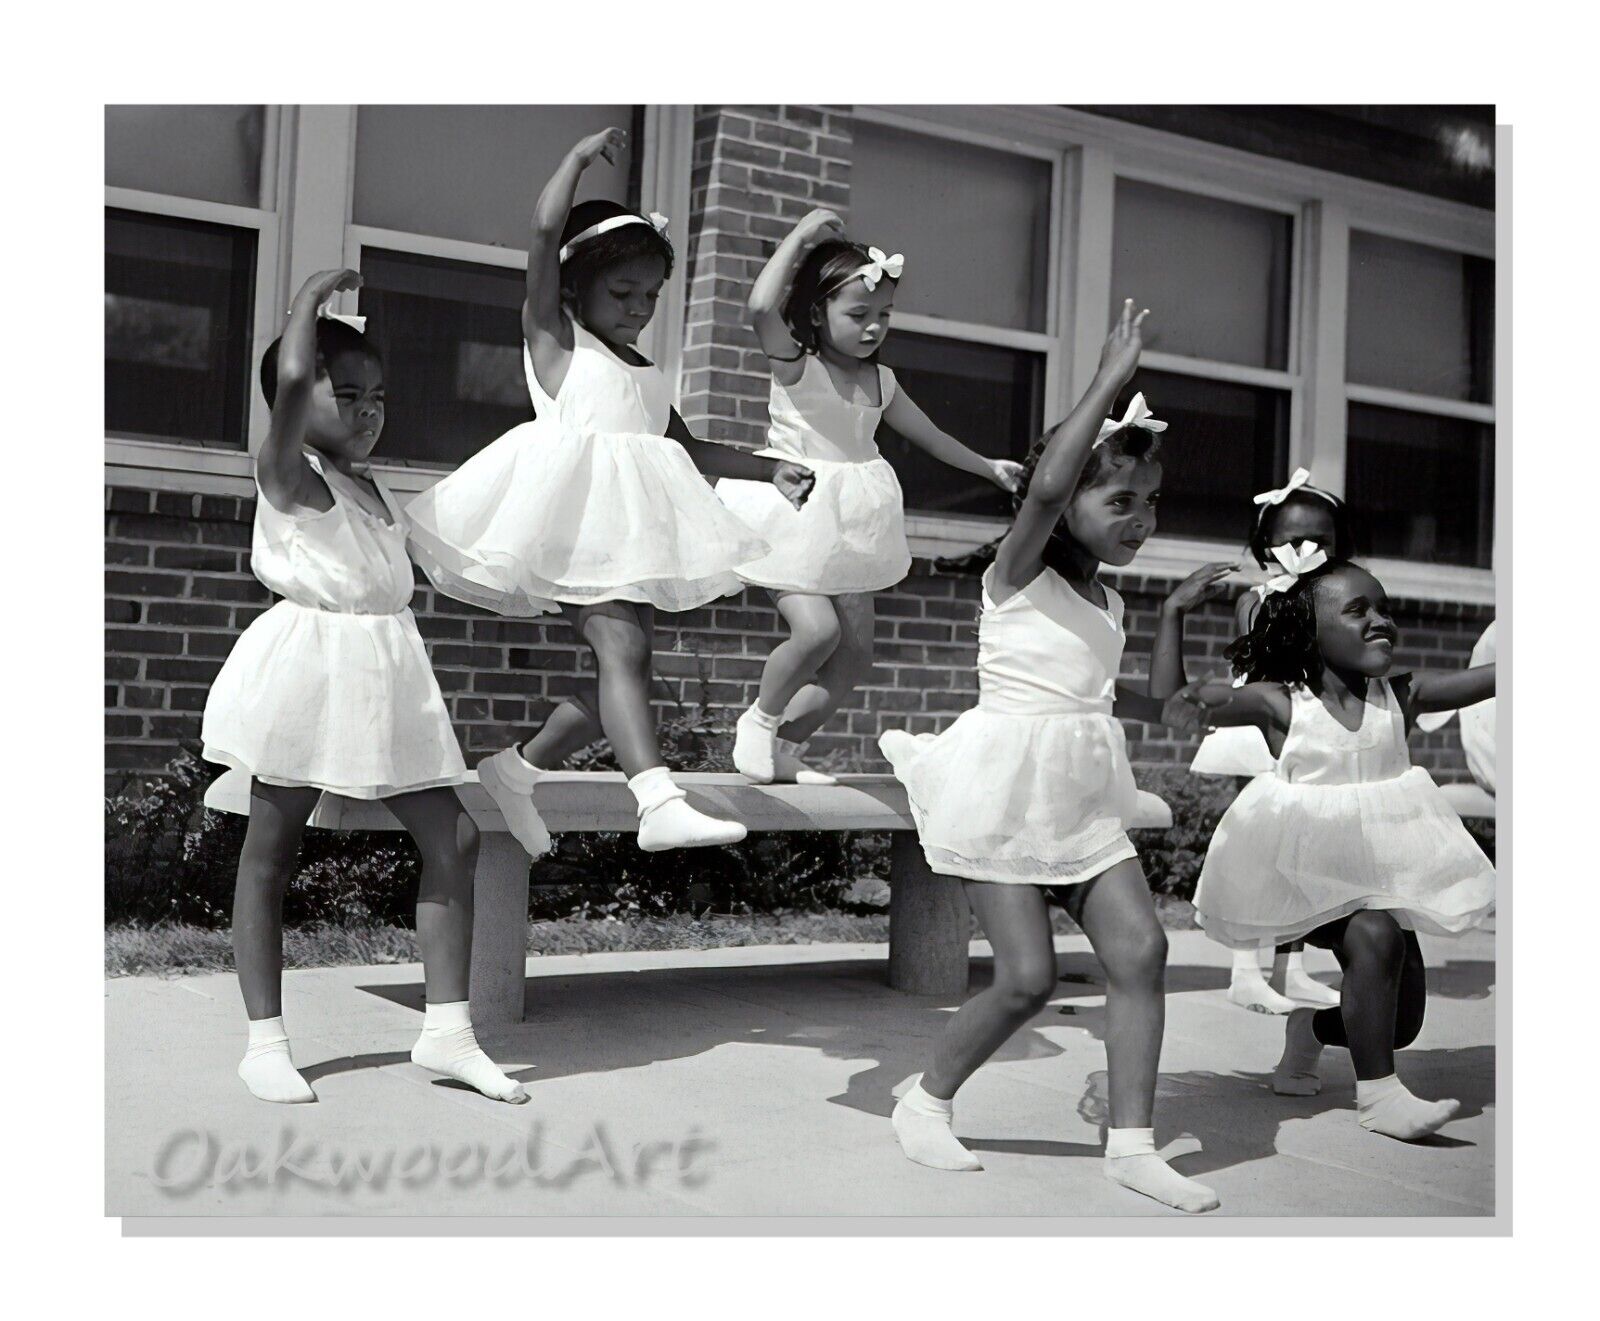 Little Girls' Dance Group by Gordon Parks c1940s - Vintage Photo Reprint